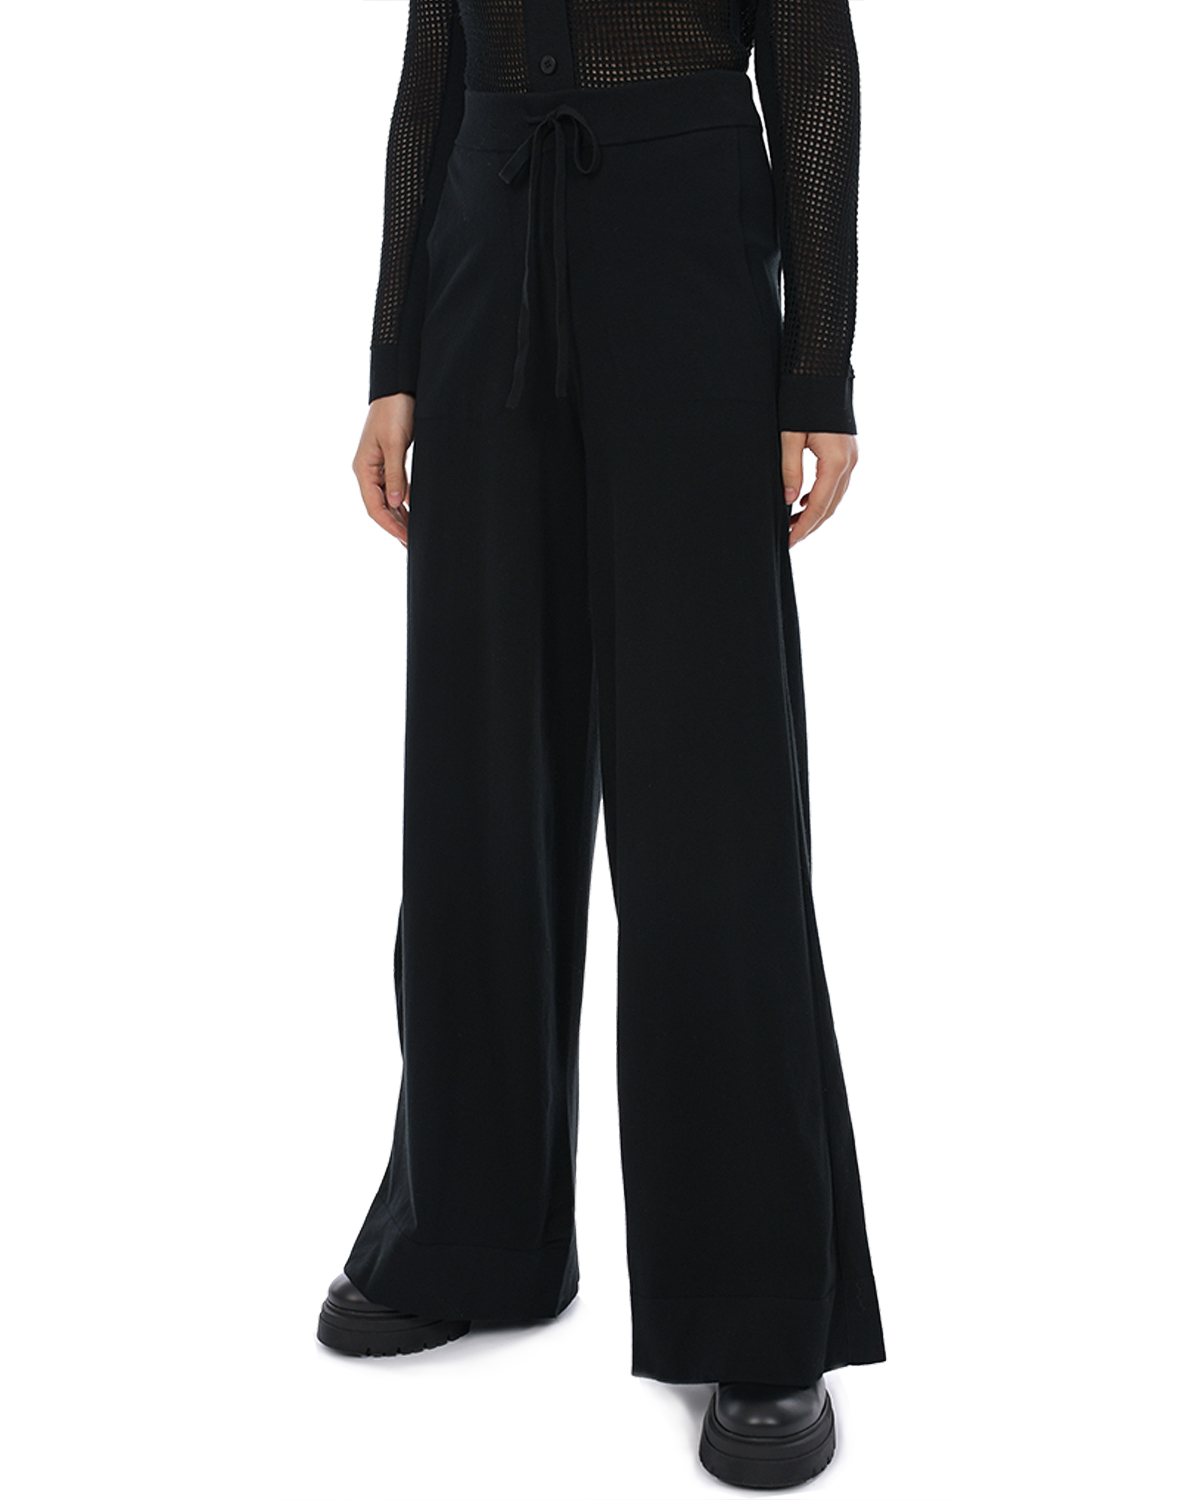 Черные трикотажные брюки-палаццо Dorothee Schumacher, размер 44, цвет черный - фото 6